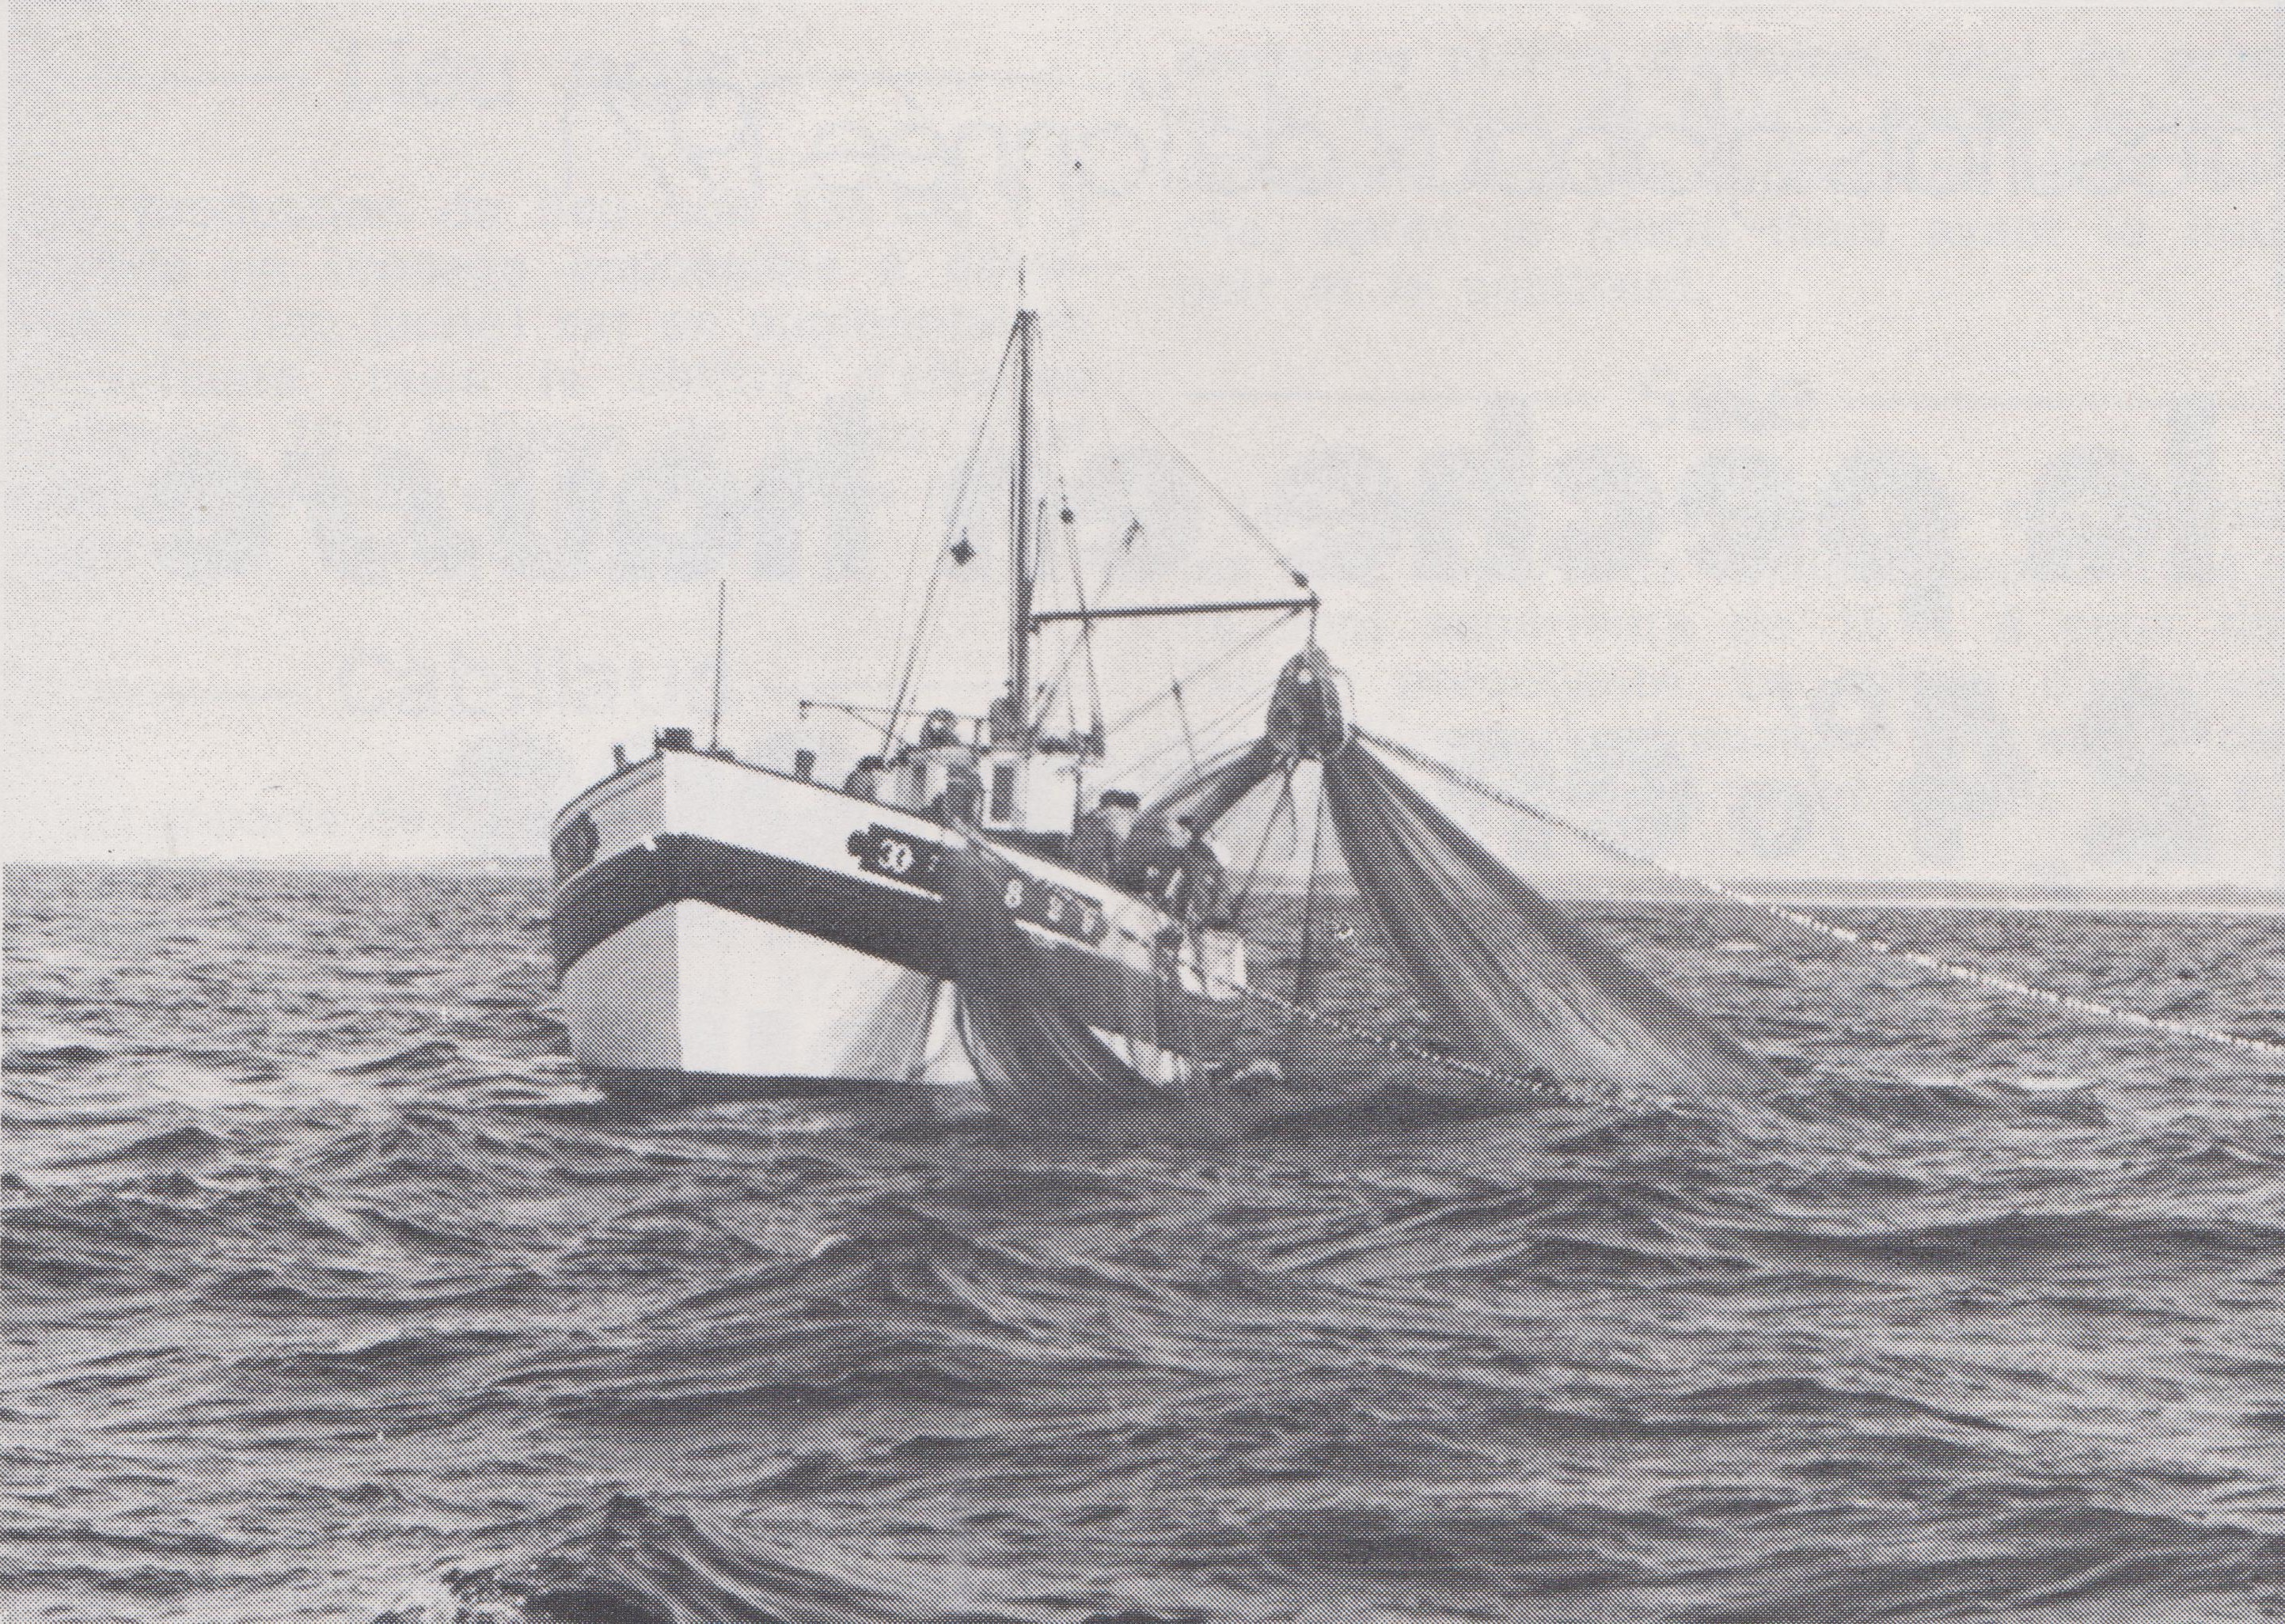 Source : Revue FRANCE pêche n° 171 de Juin 1972 - Archives Philippe Urvois